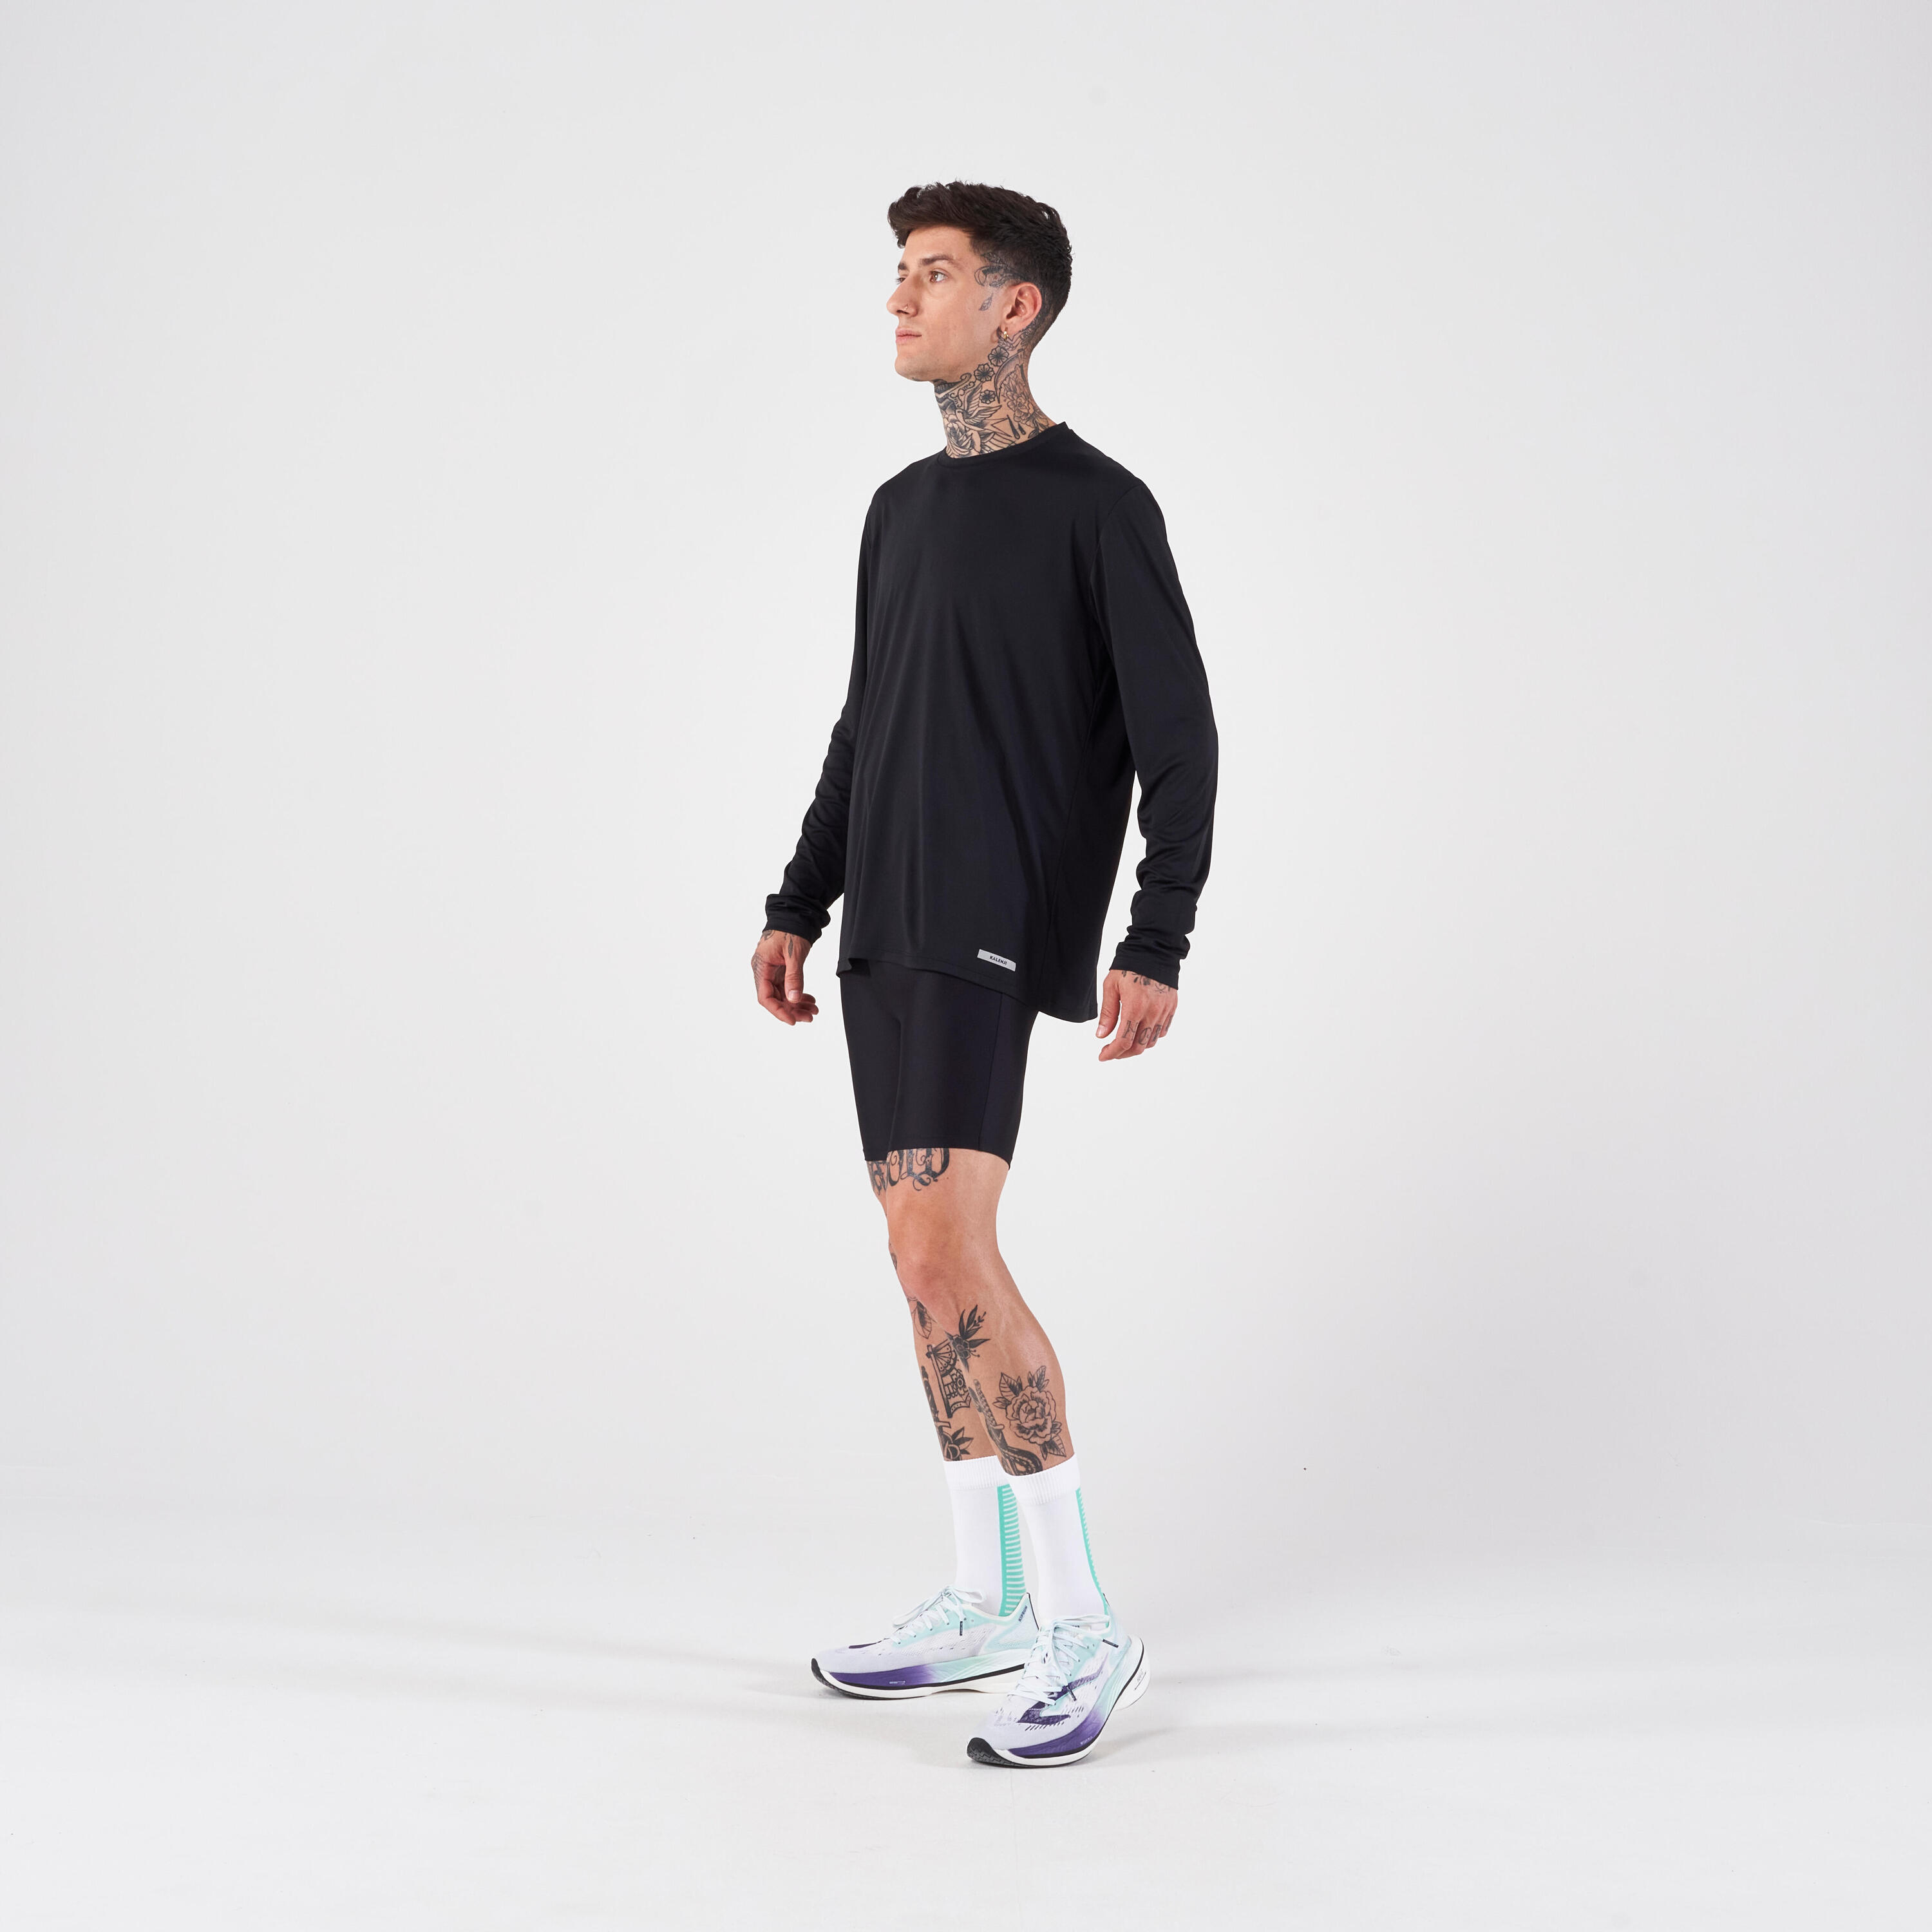 Men's Running Long-Sleeved T-Shirt Anti-UV - Kiprun Dry 500 UV Black 6/6